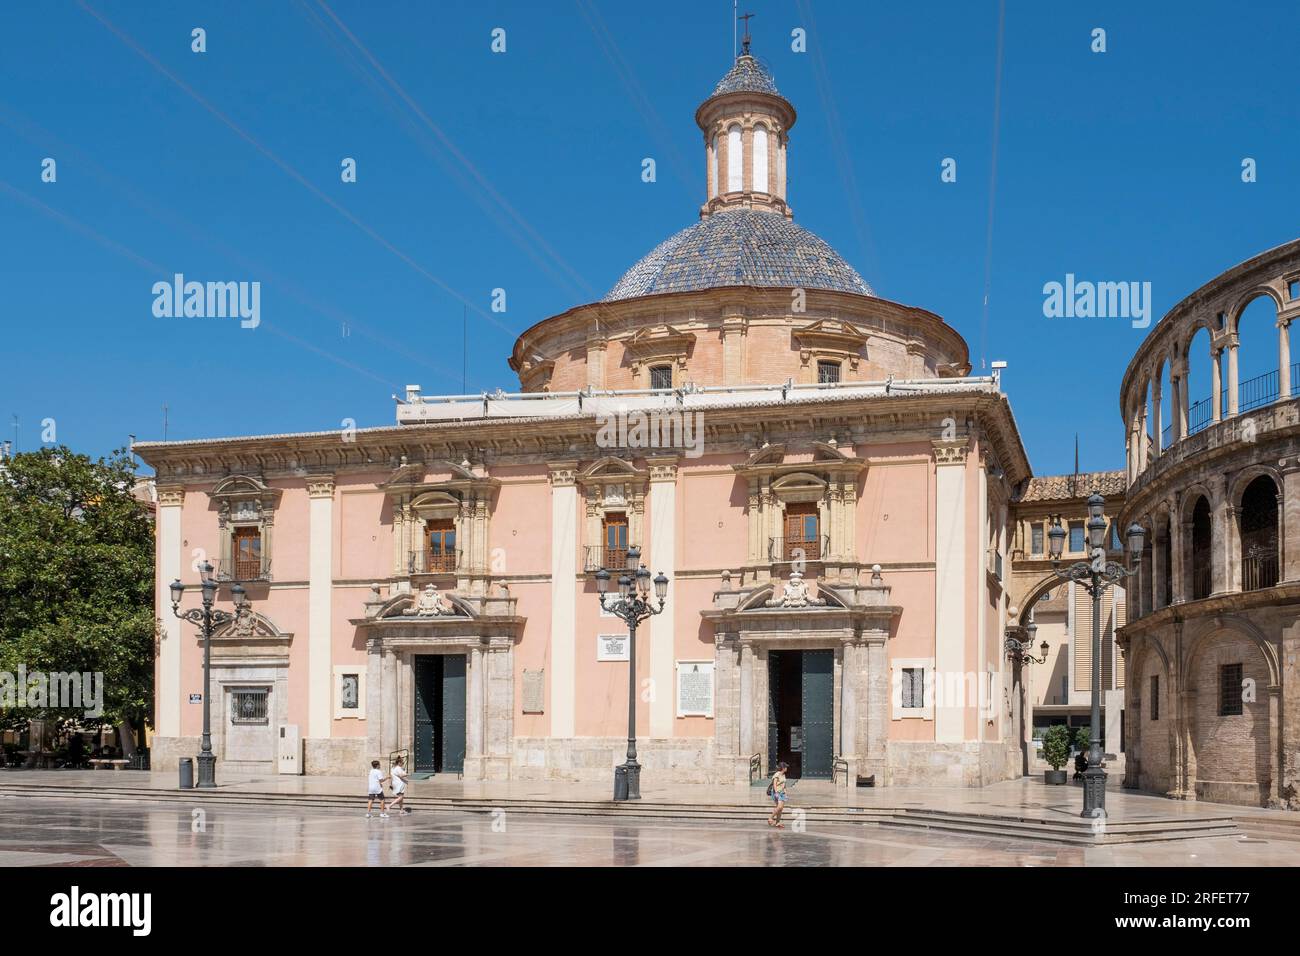 Espagne, Valence, vieille ville, Plaza de la Virgen avec la fontaine Turia, la cathédrale St Marie de Valence et la Vraie basilique de Nuestra Senora de Los Desamparados Banque D'Images